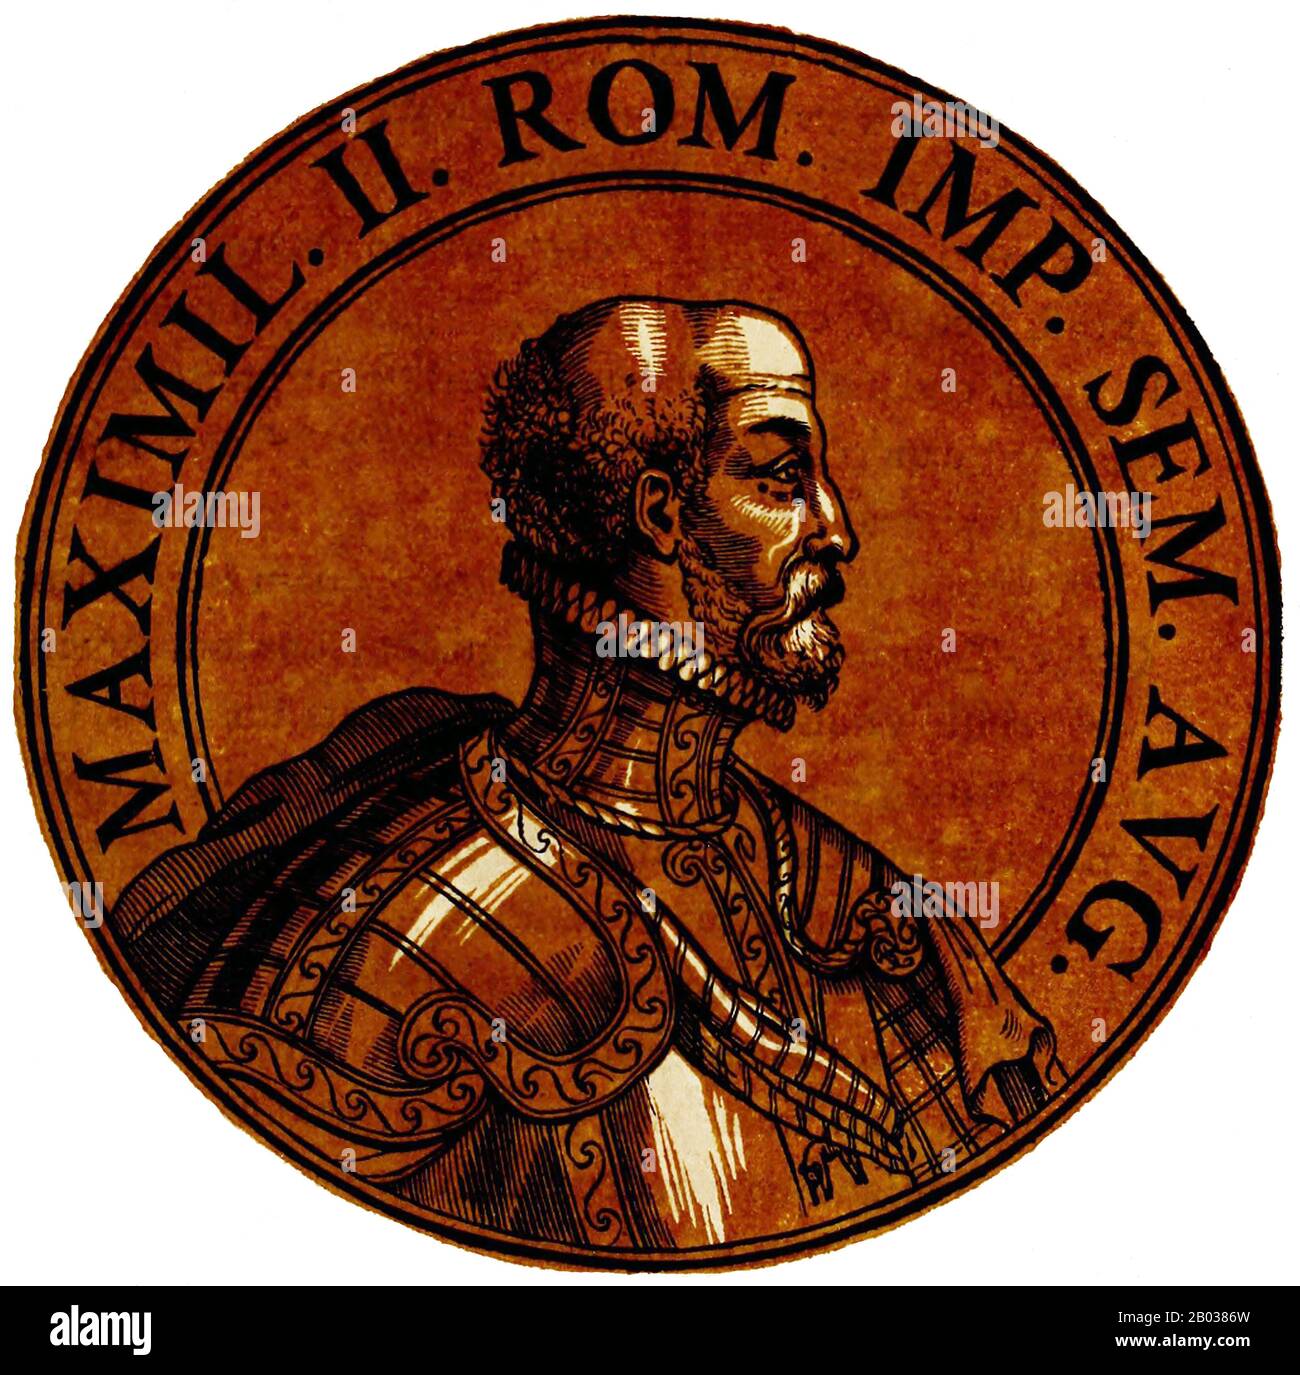 Massimiliano II (1527-1576) fu figlio dell'imperatore Ferdinando I. durante le Guerre Italiane nel 1544, così come la Guerra di Schmalkadic. Suo zio, l'imperatore Carlo V, lo fece sposare suo cugino e la figlia di Carlo Maria di Spagna nel 1548, e Massimiliano agì temporaneamente come rappresentante dell'imperatore in Spagna. Le questioni di successione presto videro un disturbo tra i rami tedeschi e spagnoli della dinastia degli Asburgo, e si sospettate che Massimiliano fu avvelenato nel 1552 da coloro che erano in lega con suo cugino e cognato Filippo II Il rapporto tra Massimiliano e suo cugino Foto Stock